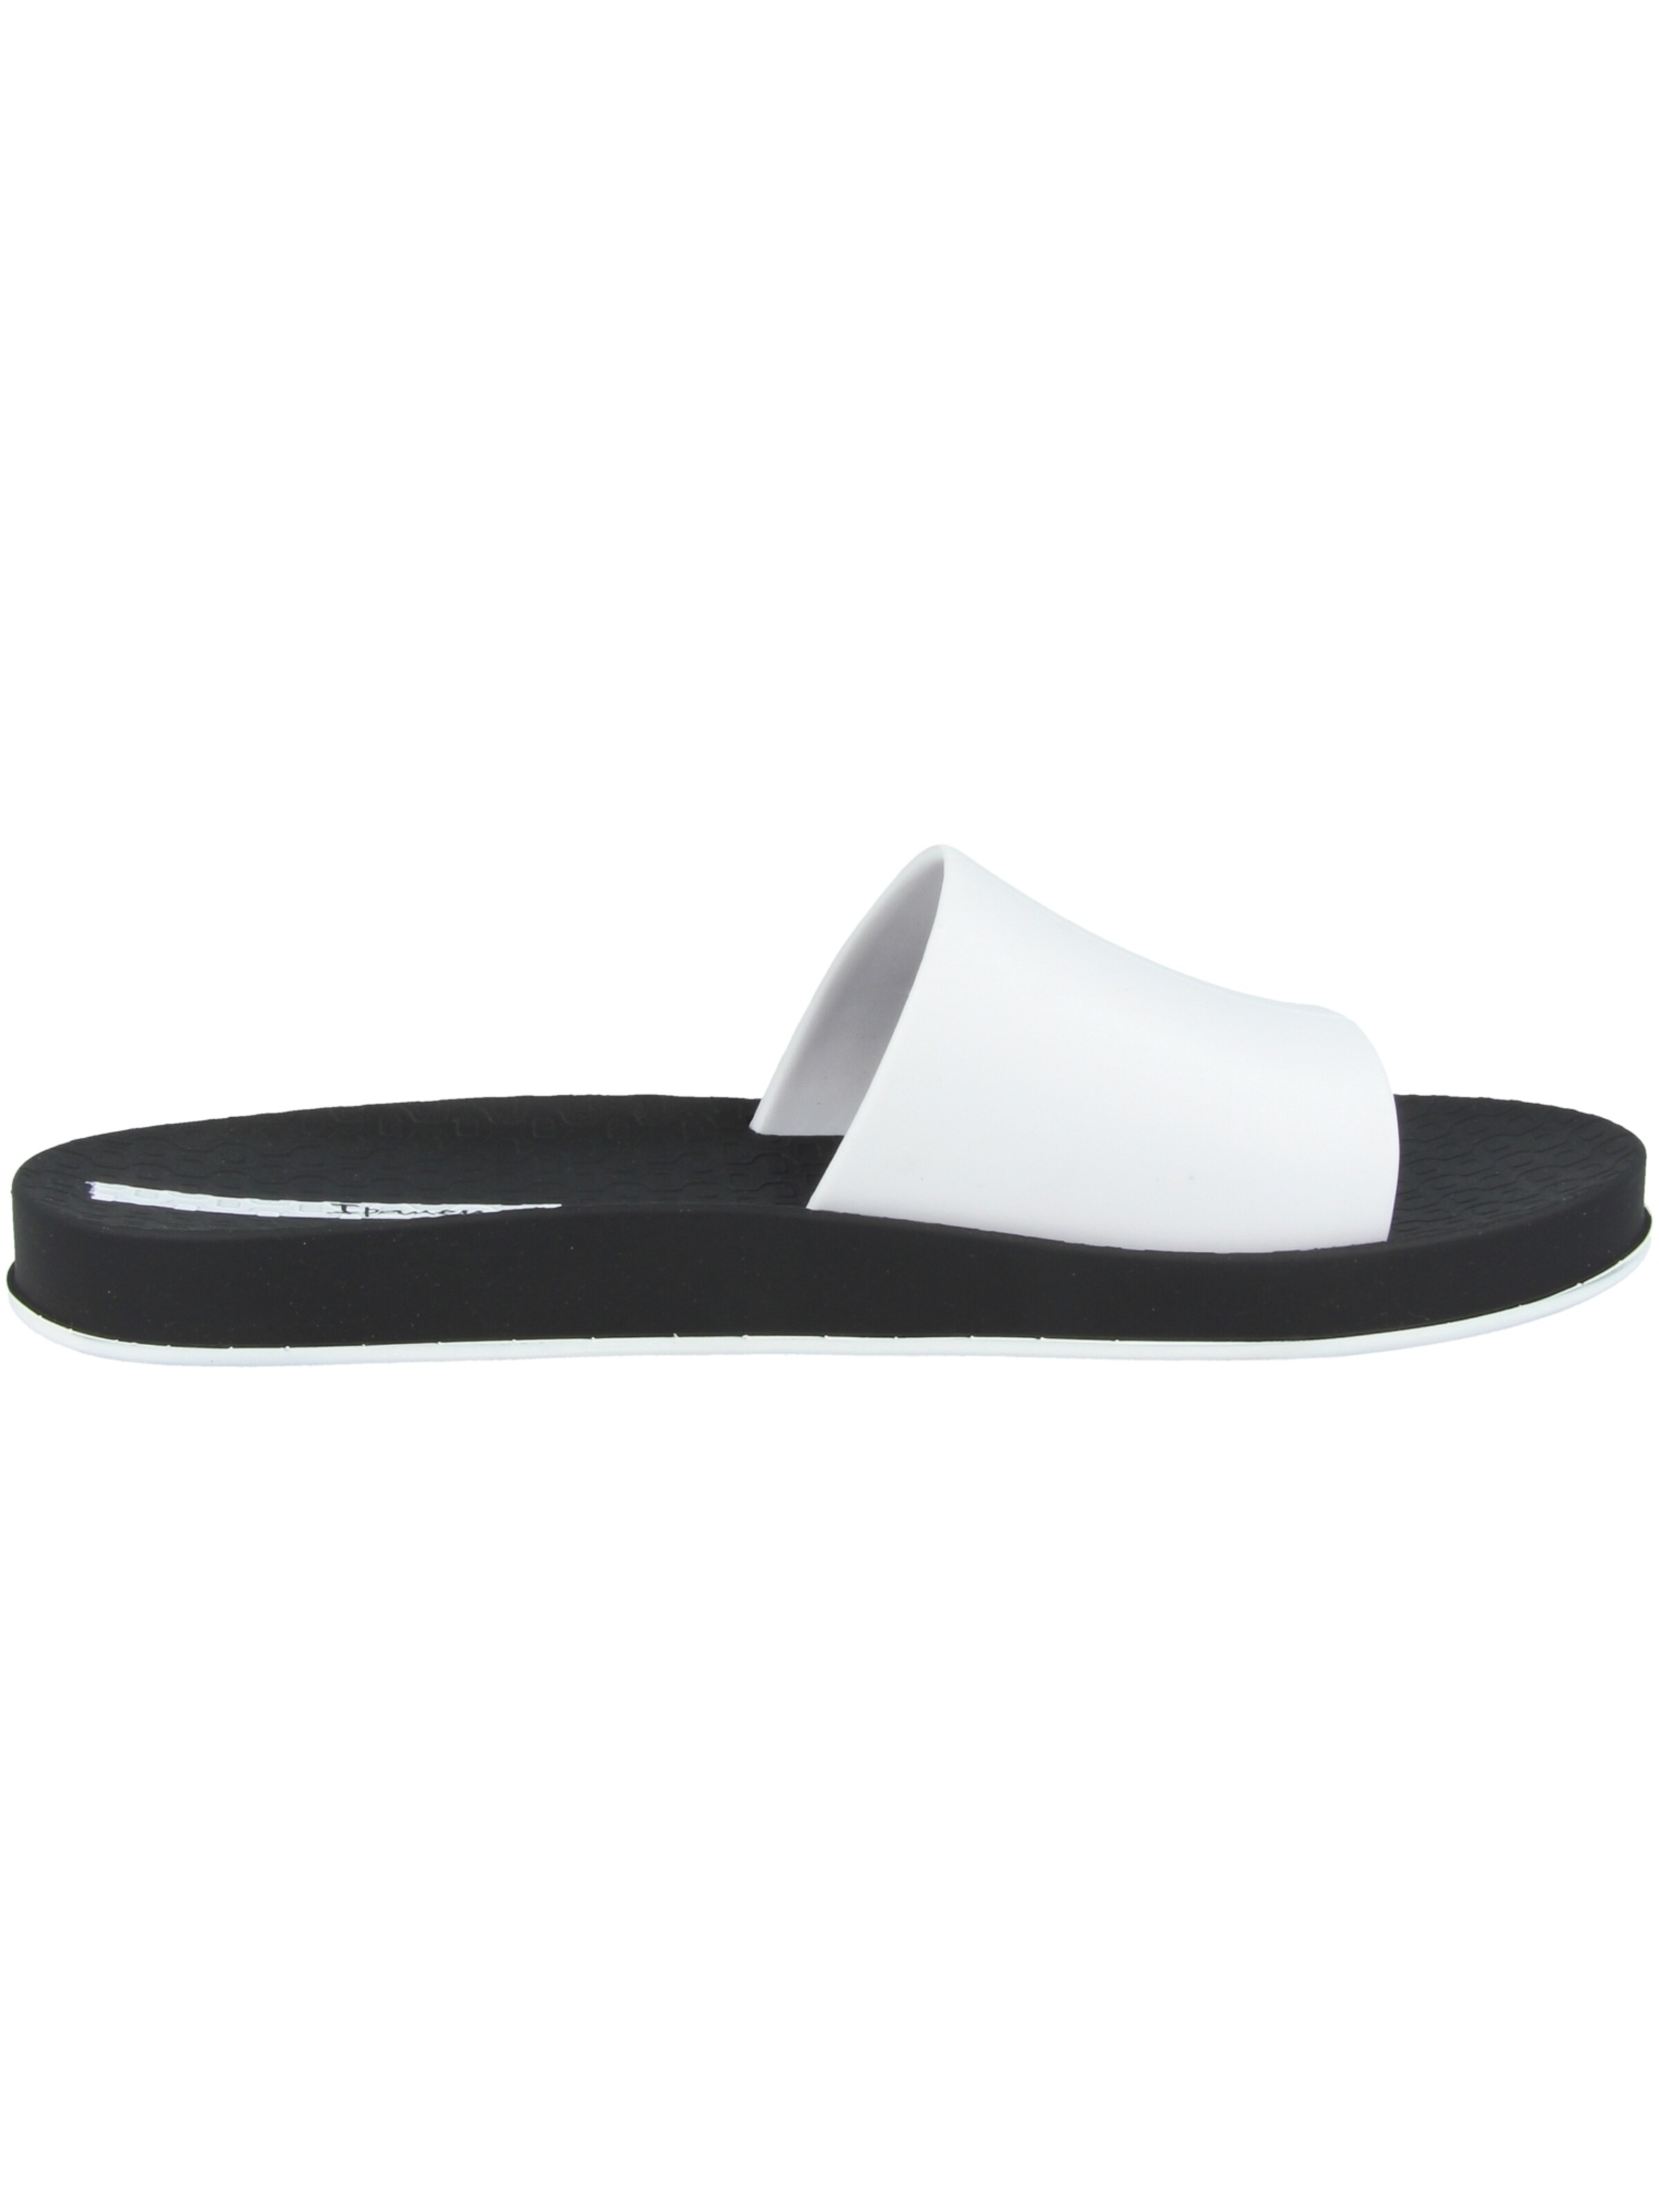 Chaussures ouvertes Mule Slide Ipanema en Blanc, Noir 